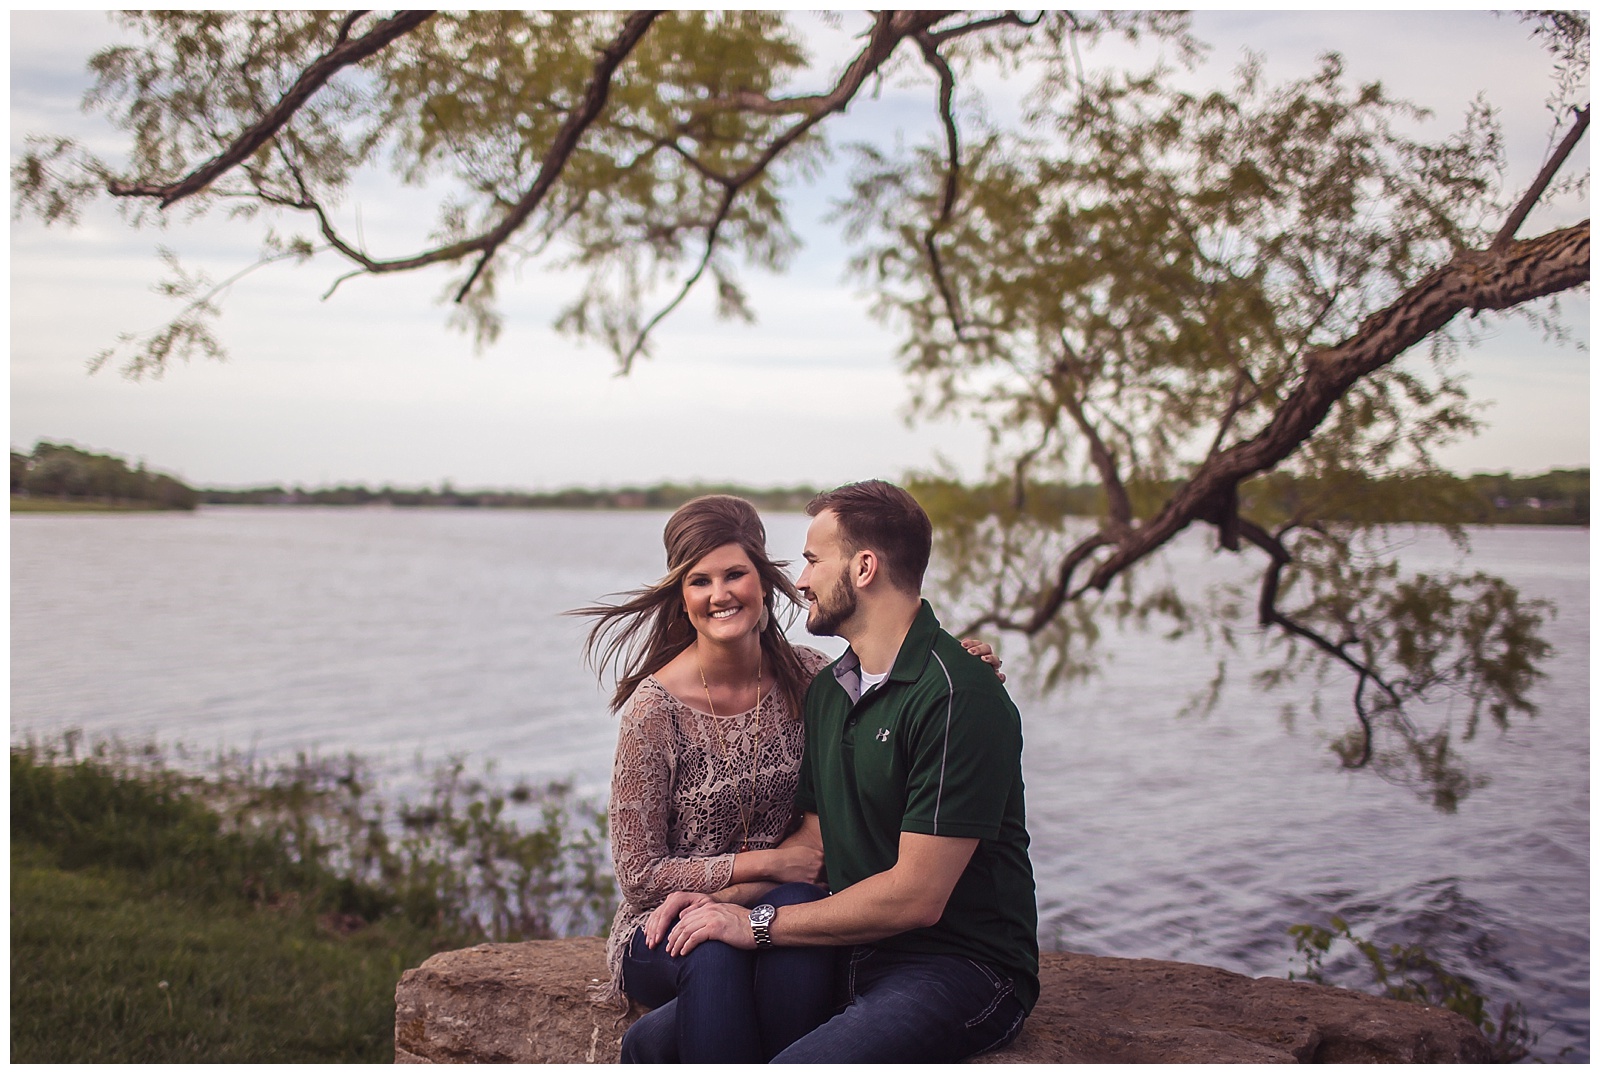 An engagement session at Lake Shawnee in Topeka, Kansas.